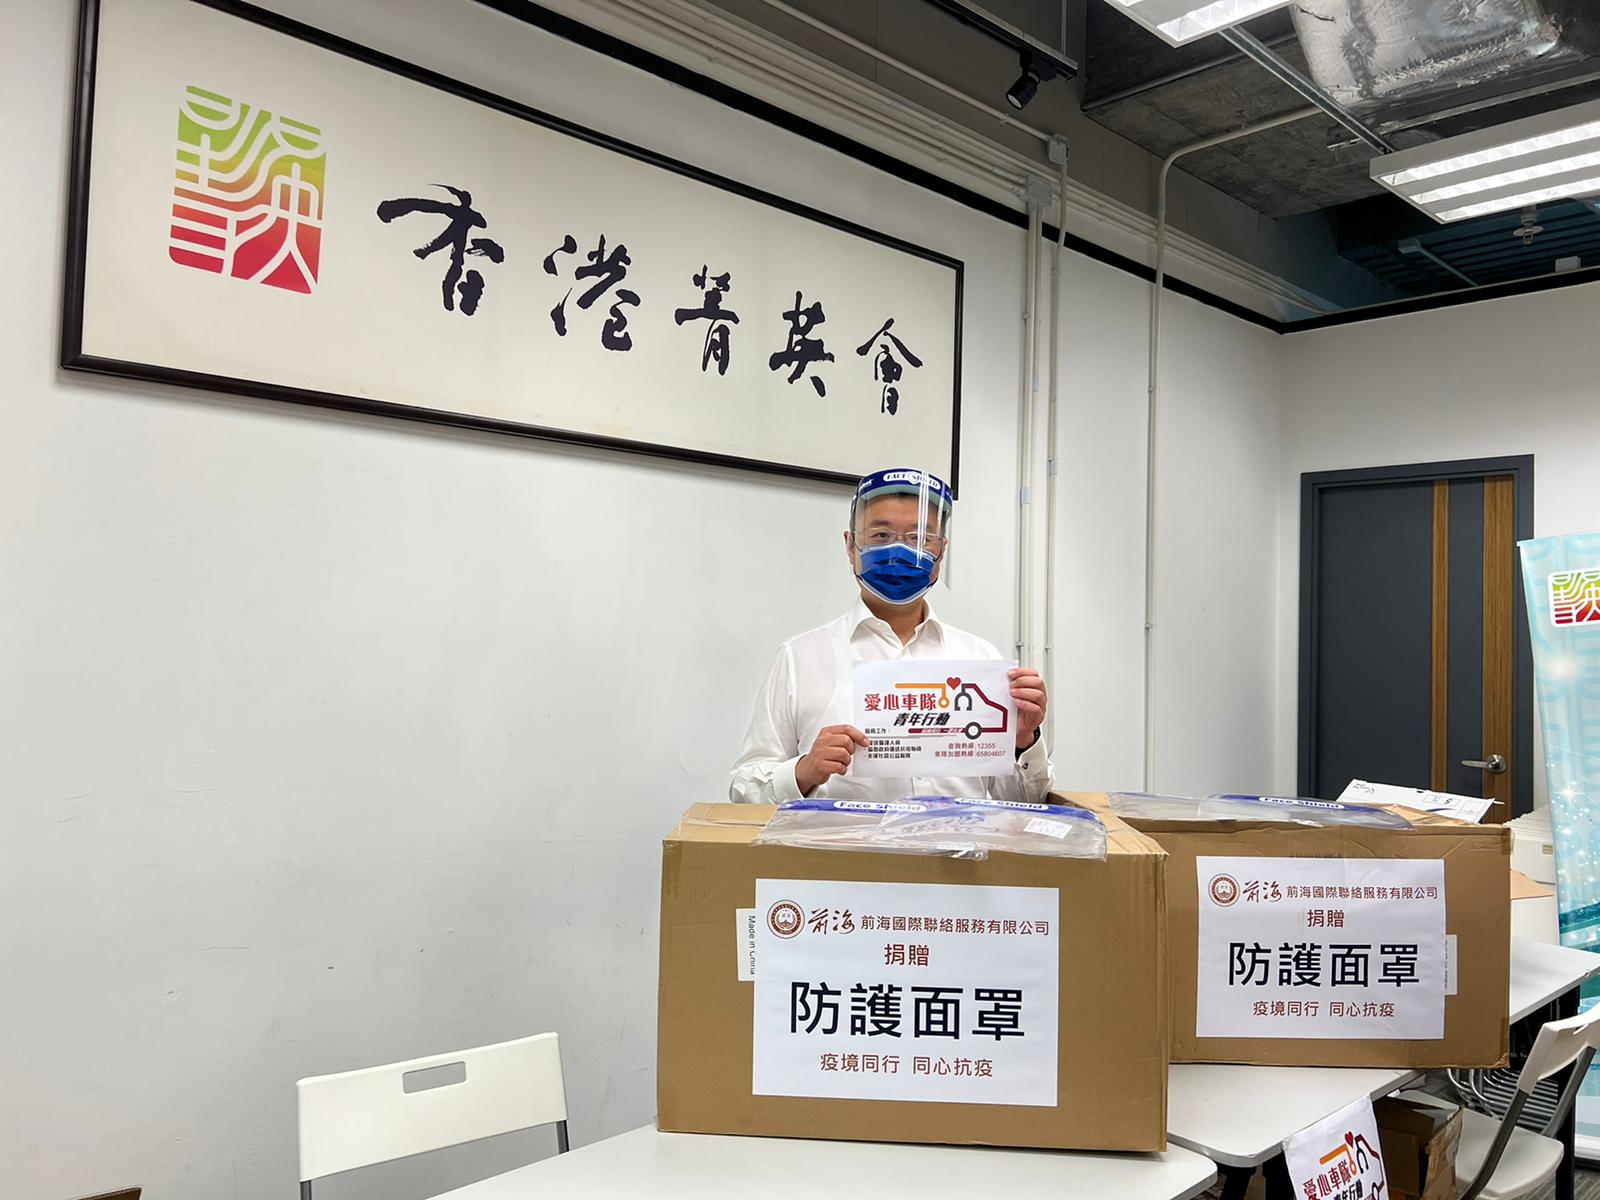 向香港菁英會「愛心青年車隊行動」捐贈抗疫物資